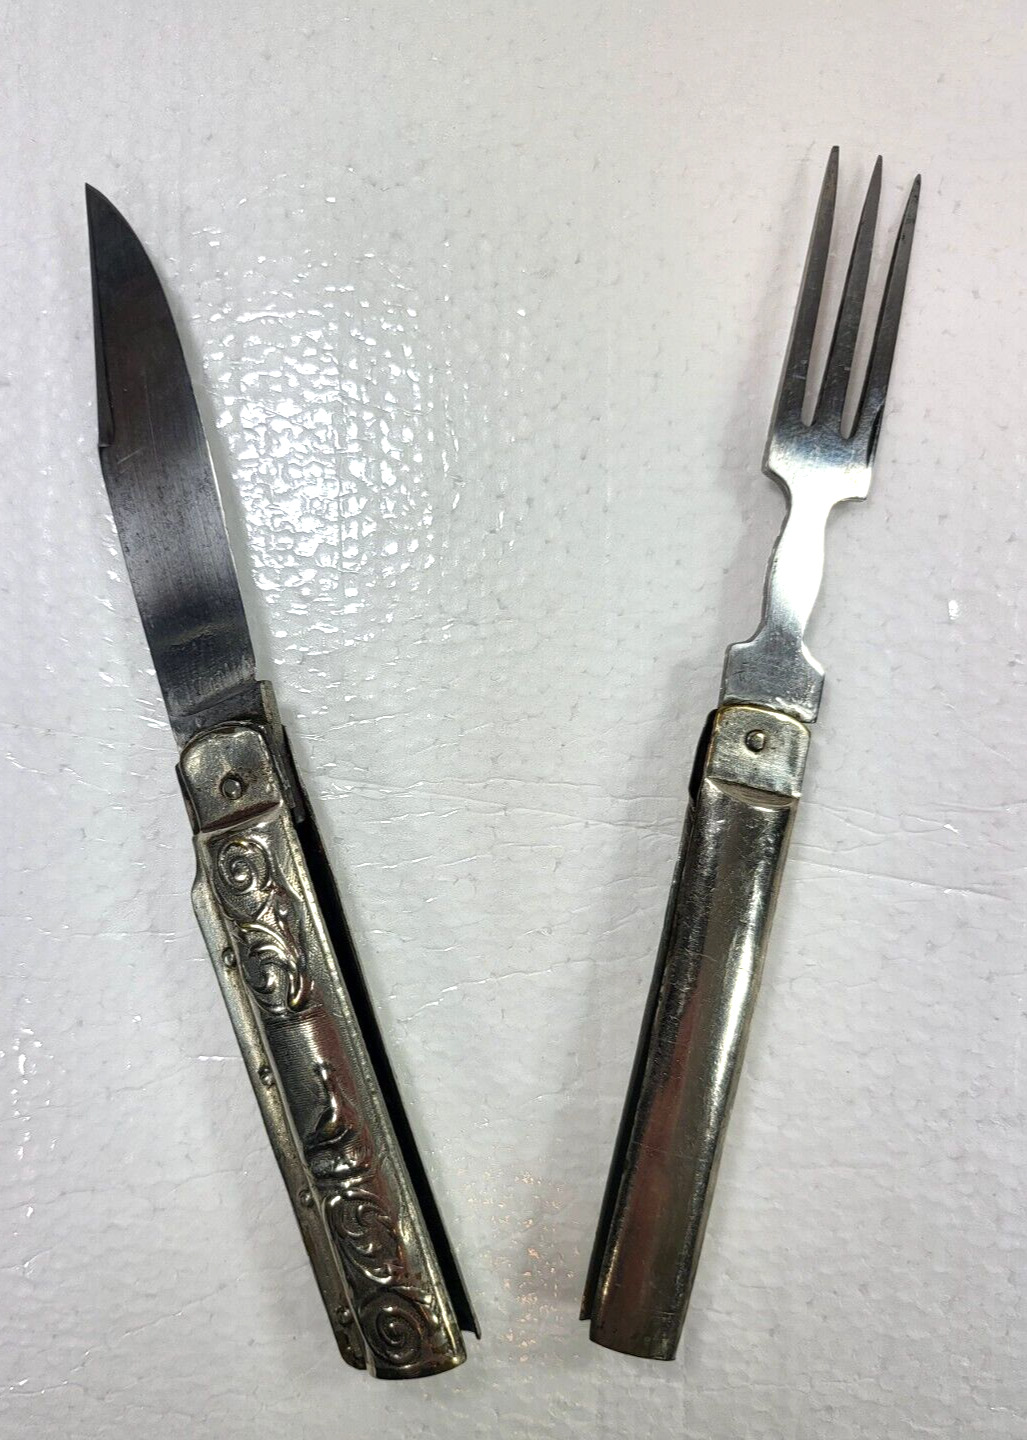 Rare 1880's Frary & Sons Hobo Pocketknife - All Original